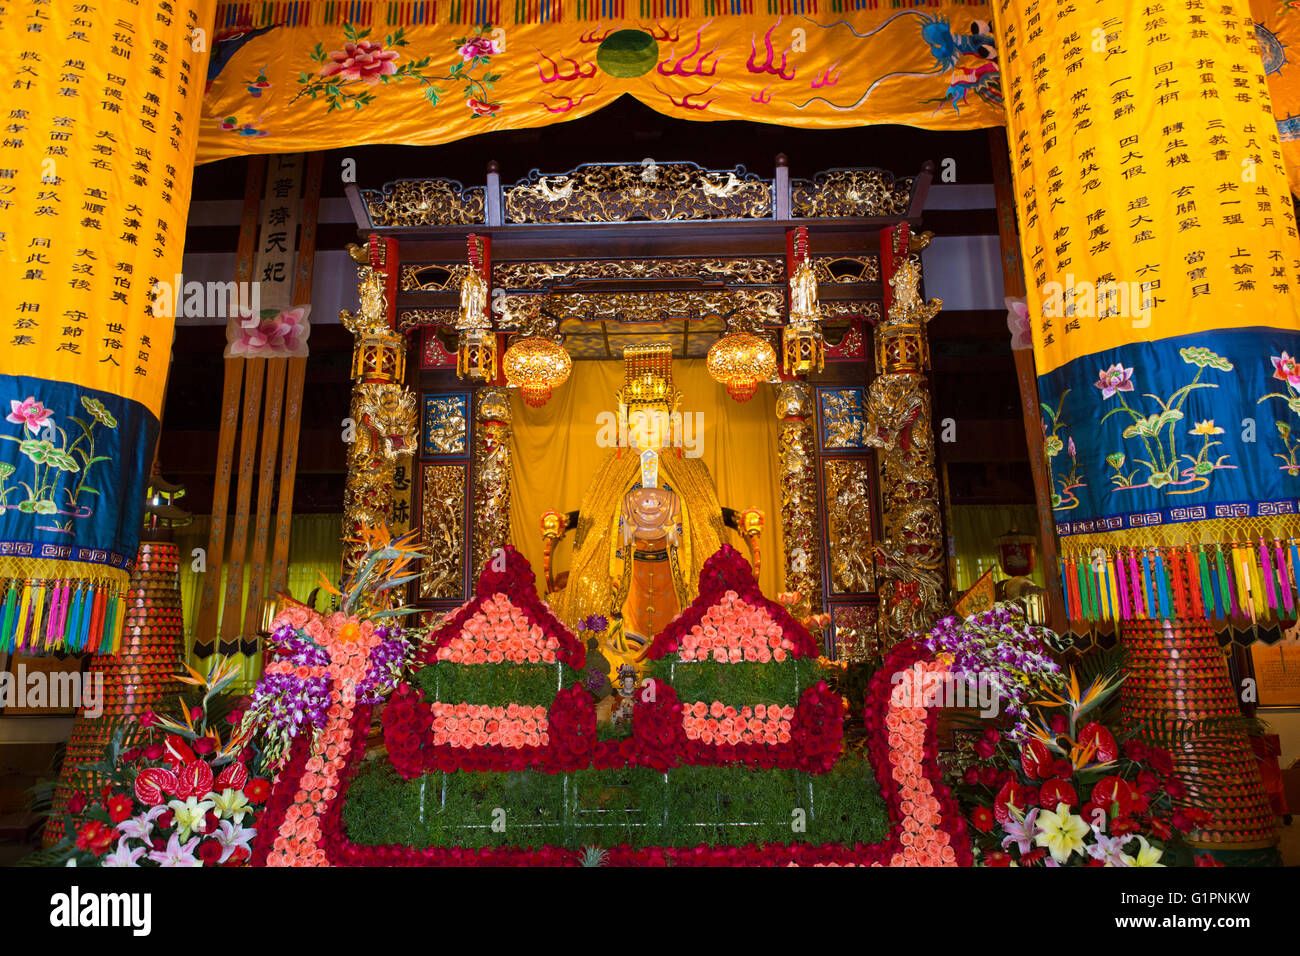 Chinese buddhist temple at Shizishan Park in Nanjing, China Stock Photo